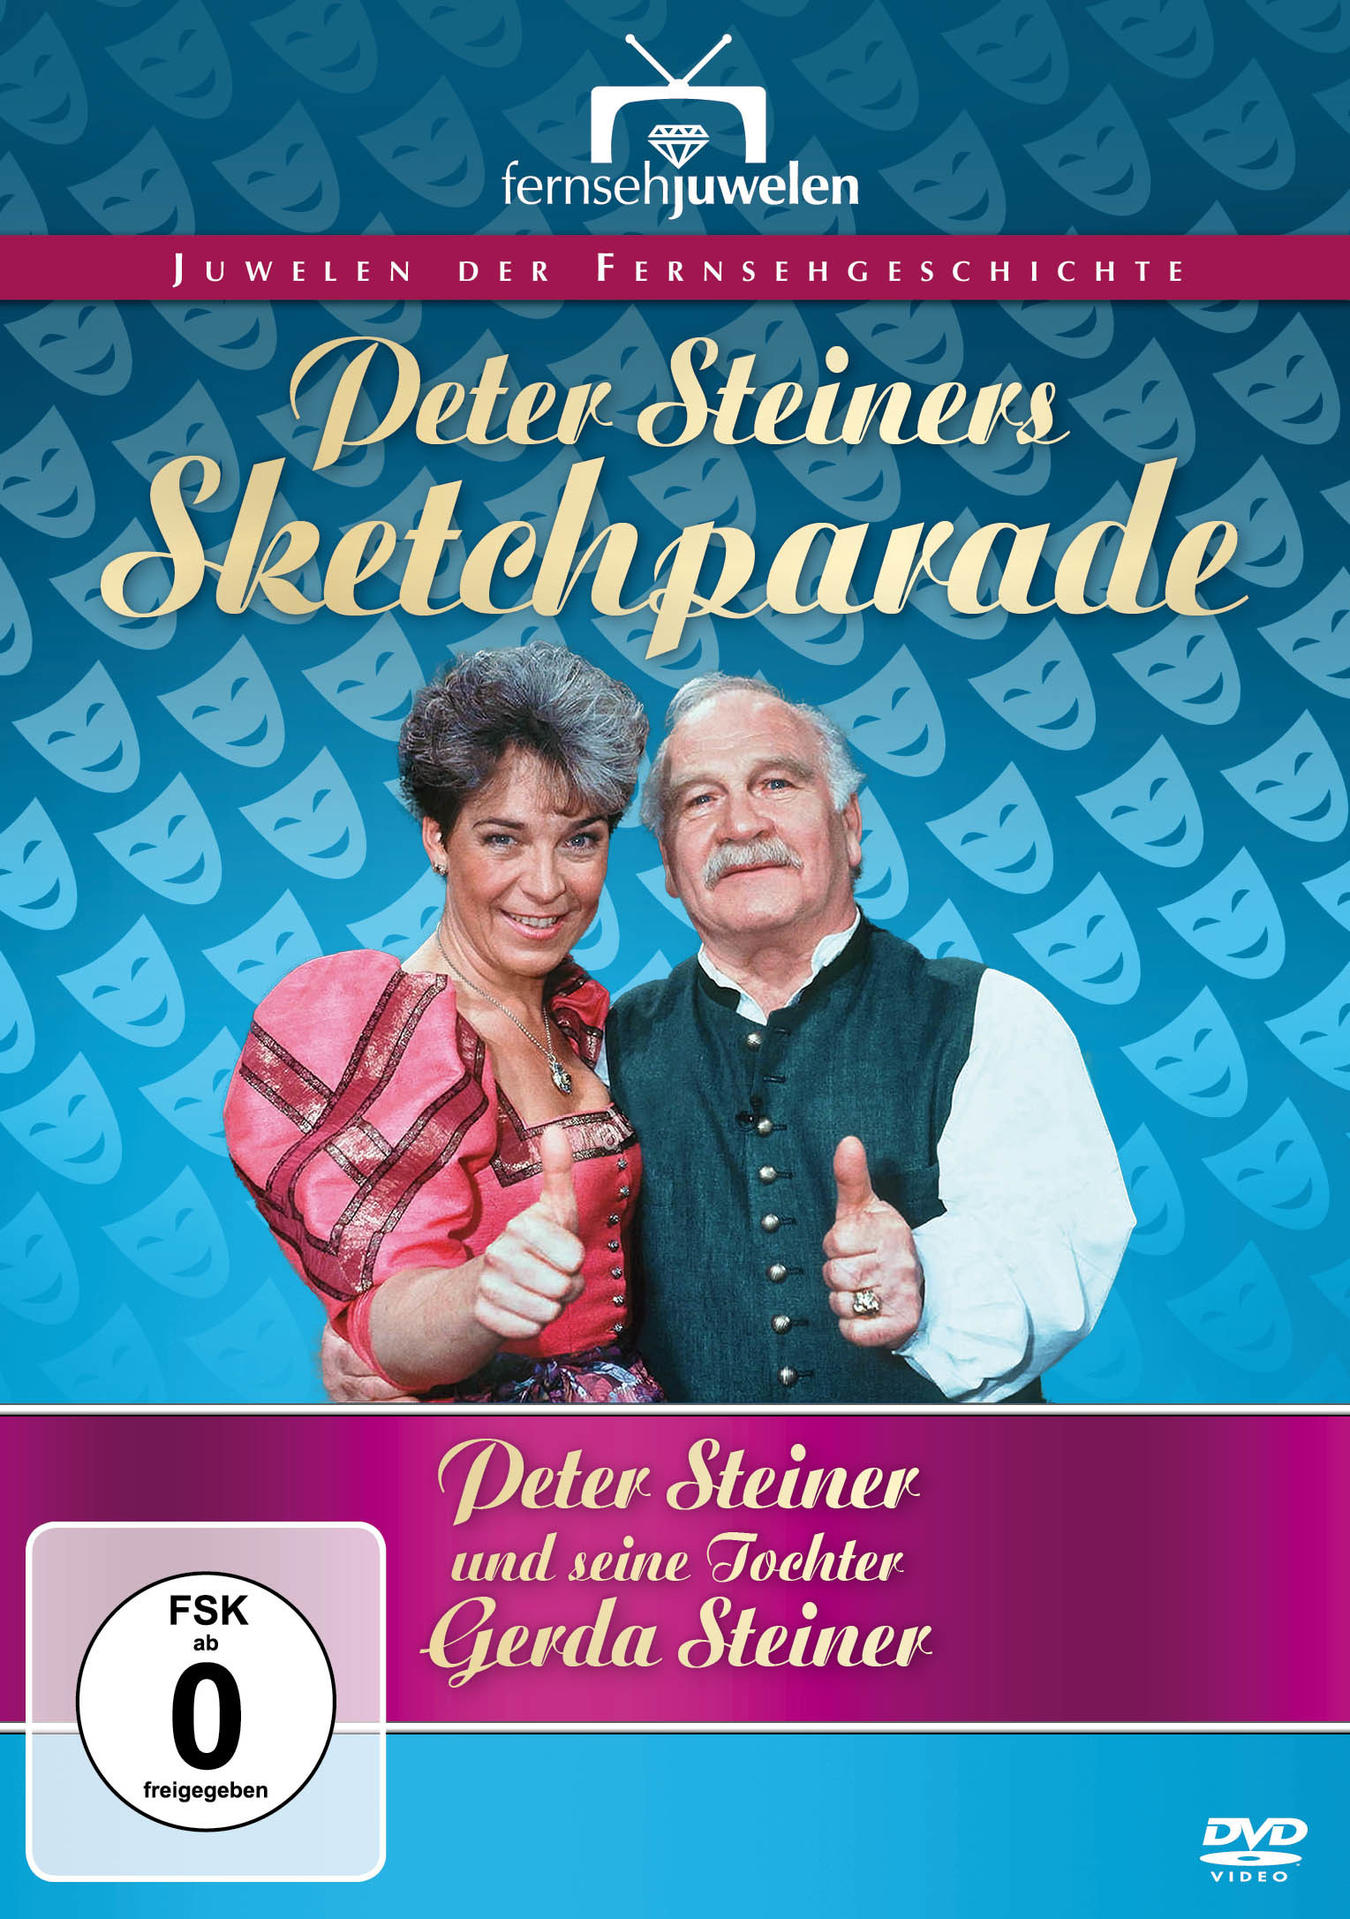 Peter Steiners Musikantenparade-Gesamtedition (A DVD